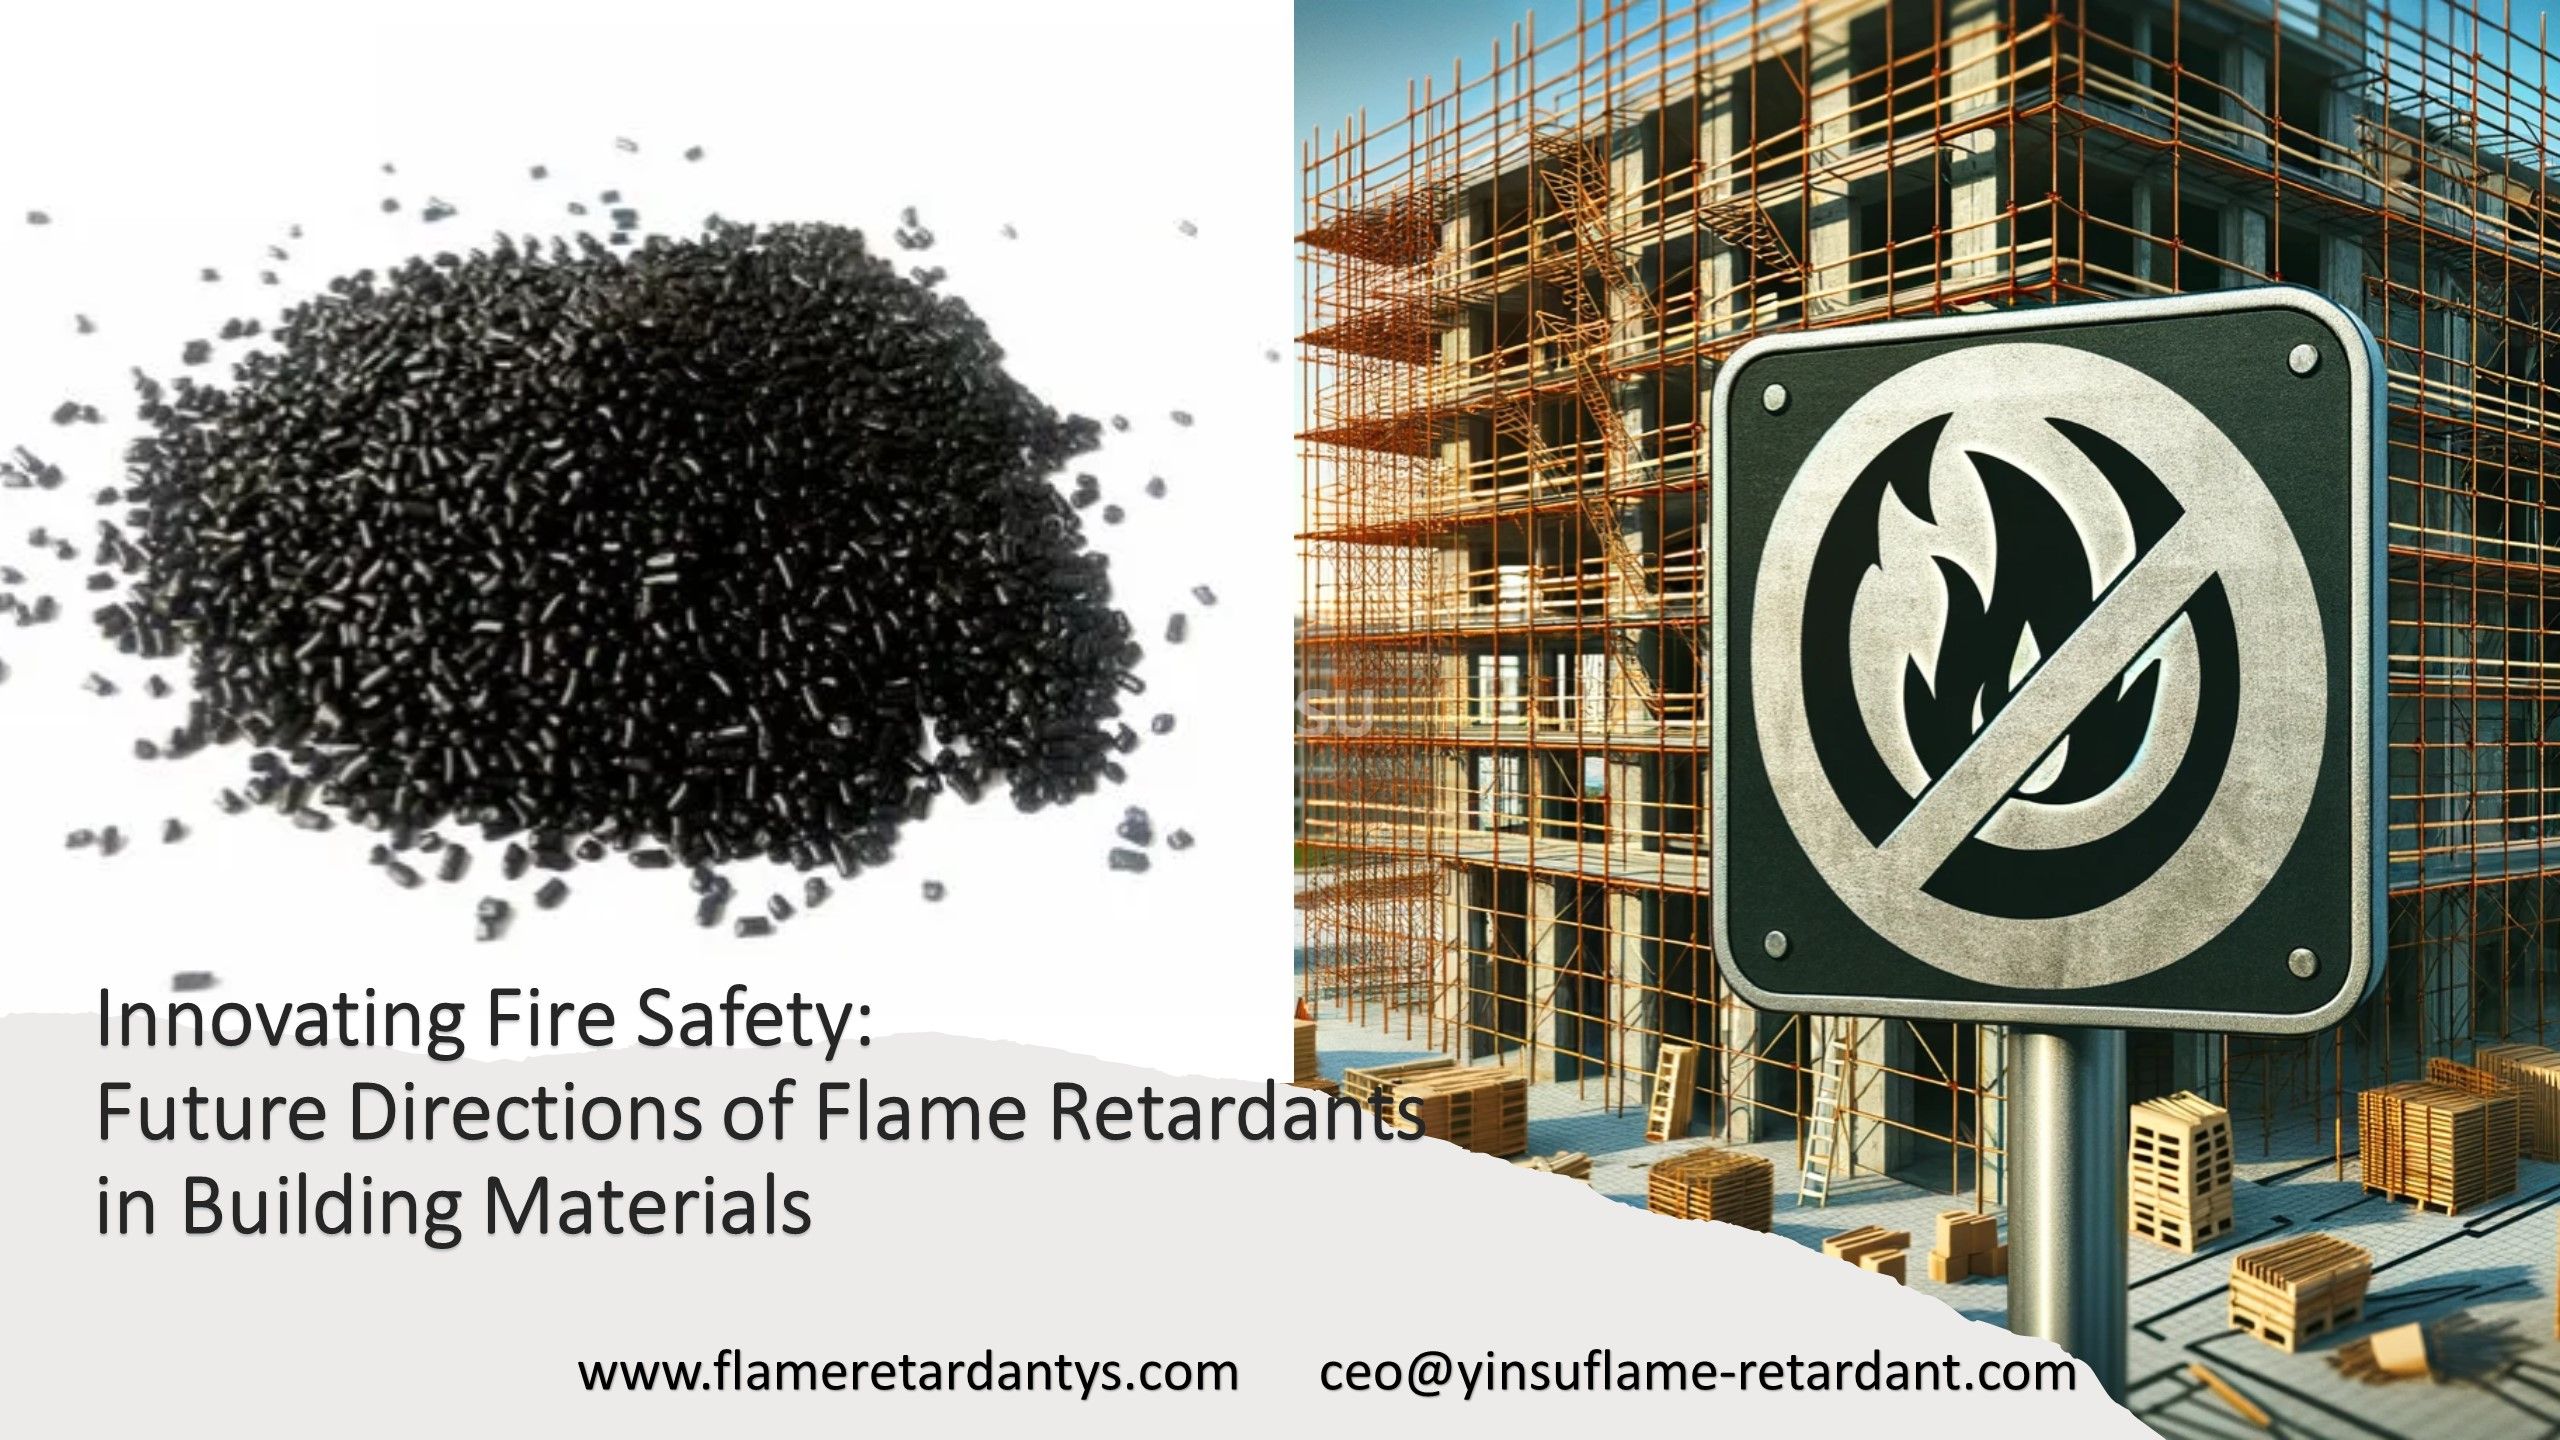 ابتكار التوجهات المستقبلية للسلامة من الحرائق لمثبطات اللهب في مواد البناء